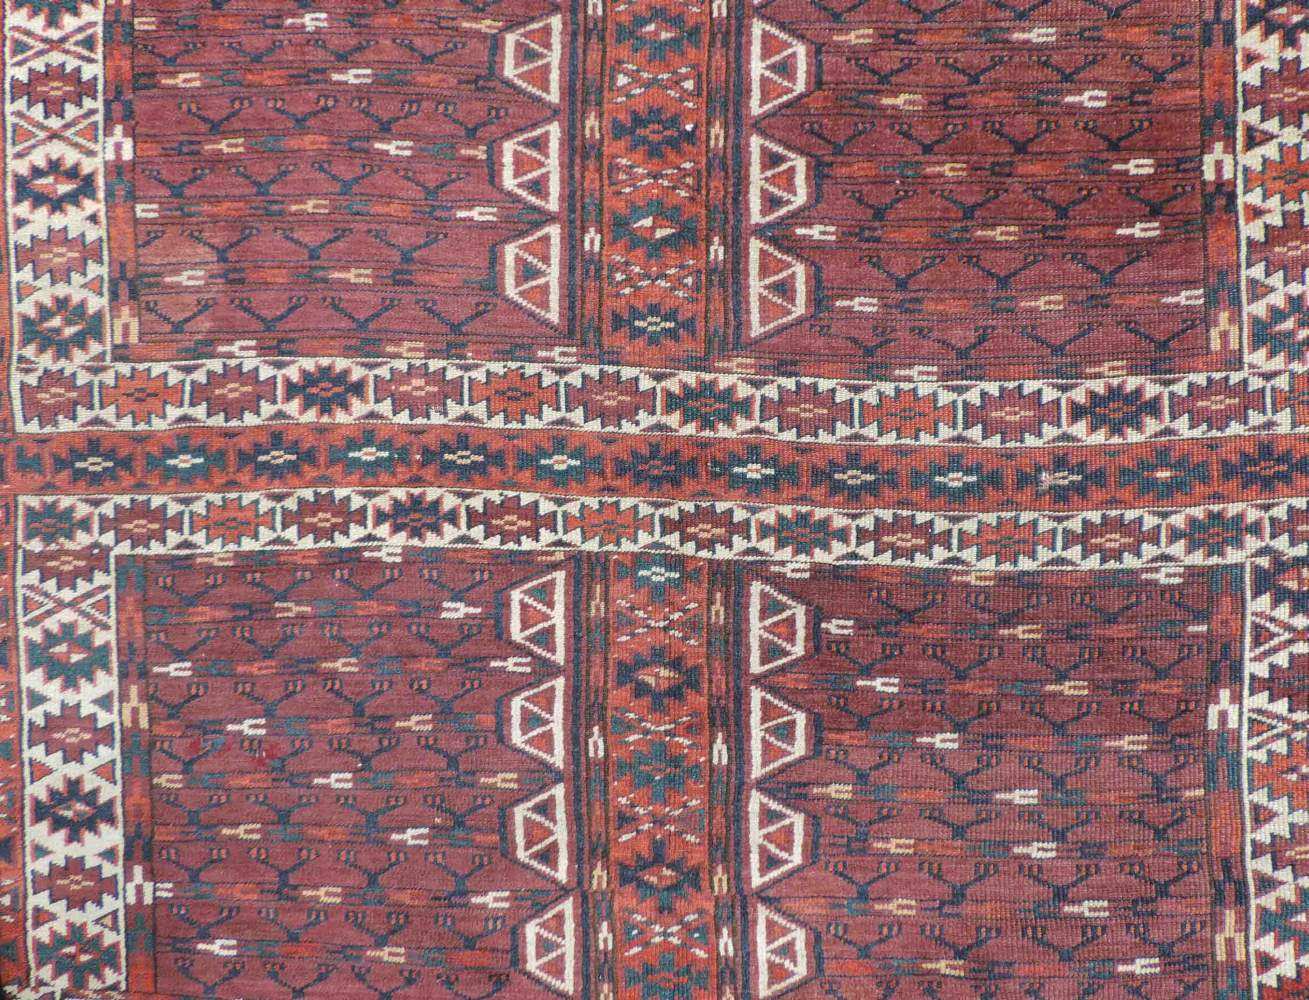 Jomud Engsi, Eingangsteppich der Turkmenen, Turkmenistan. Antik, um 1870. 165 cm x 137 cm. - Image 3 of 7